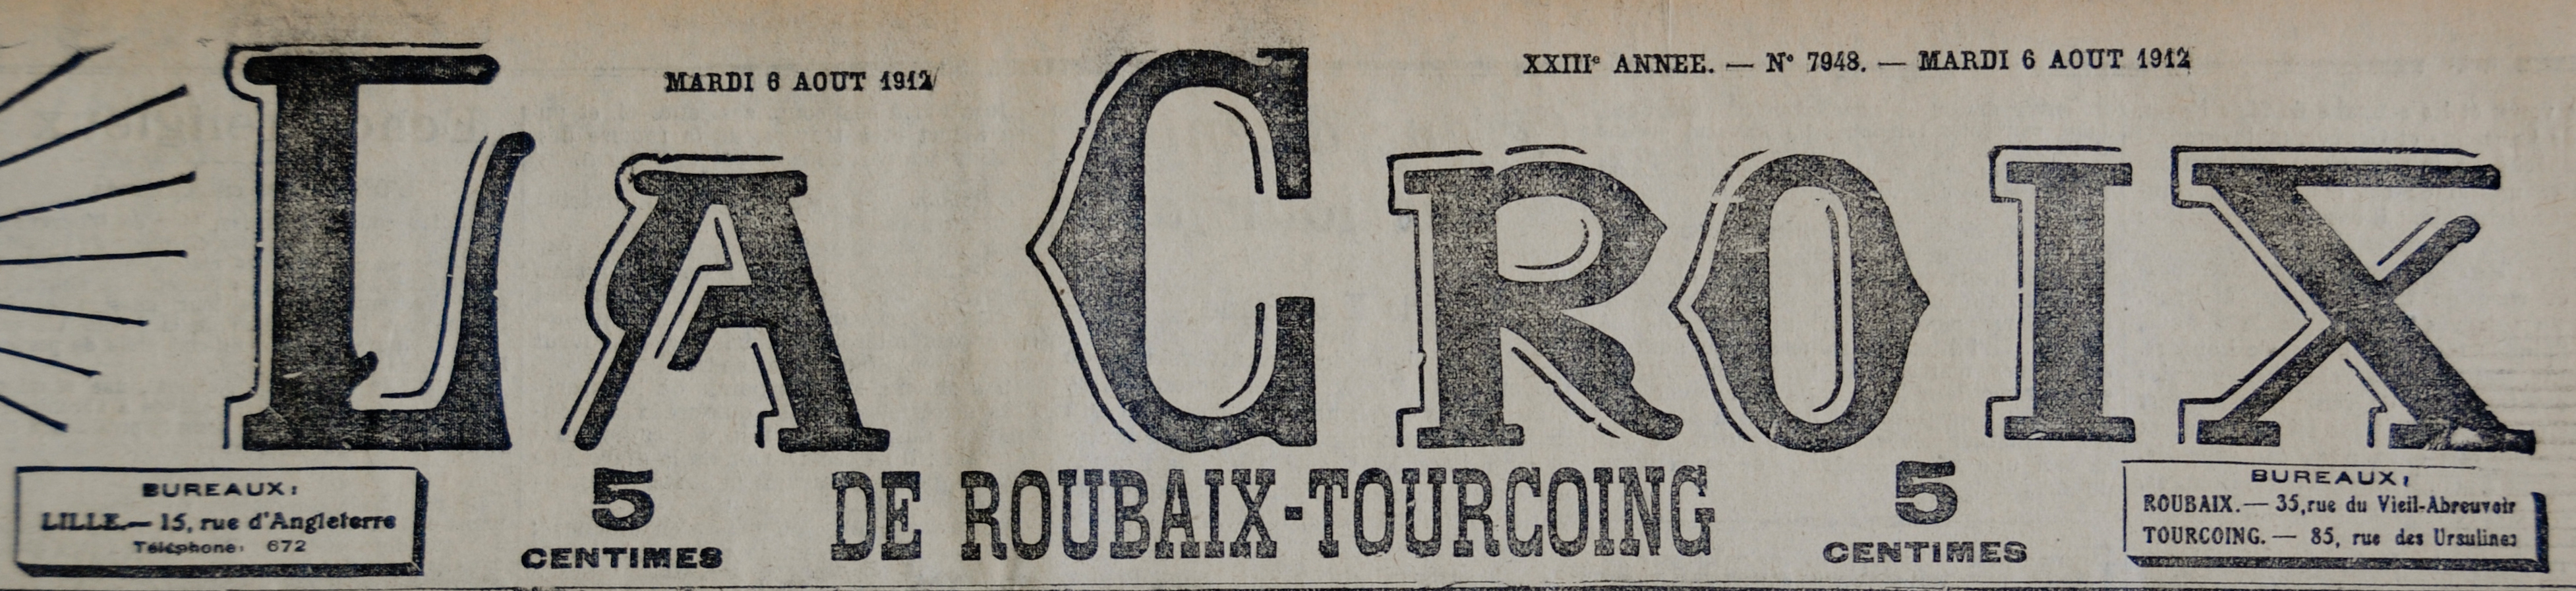 En savoir plus sur La Croix de Roubaix-Tourcoing